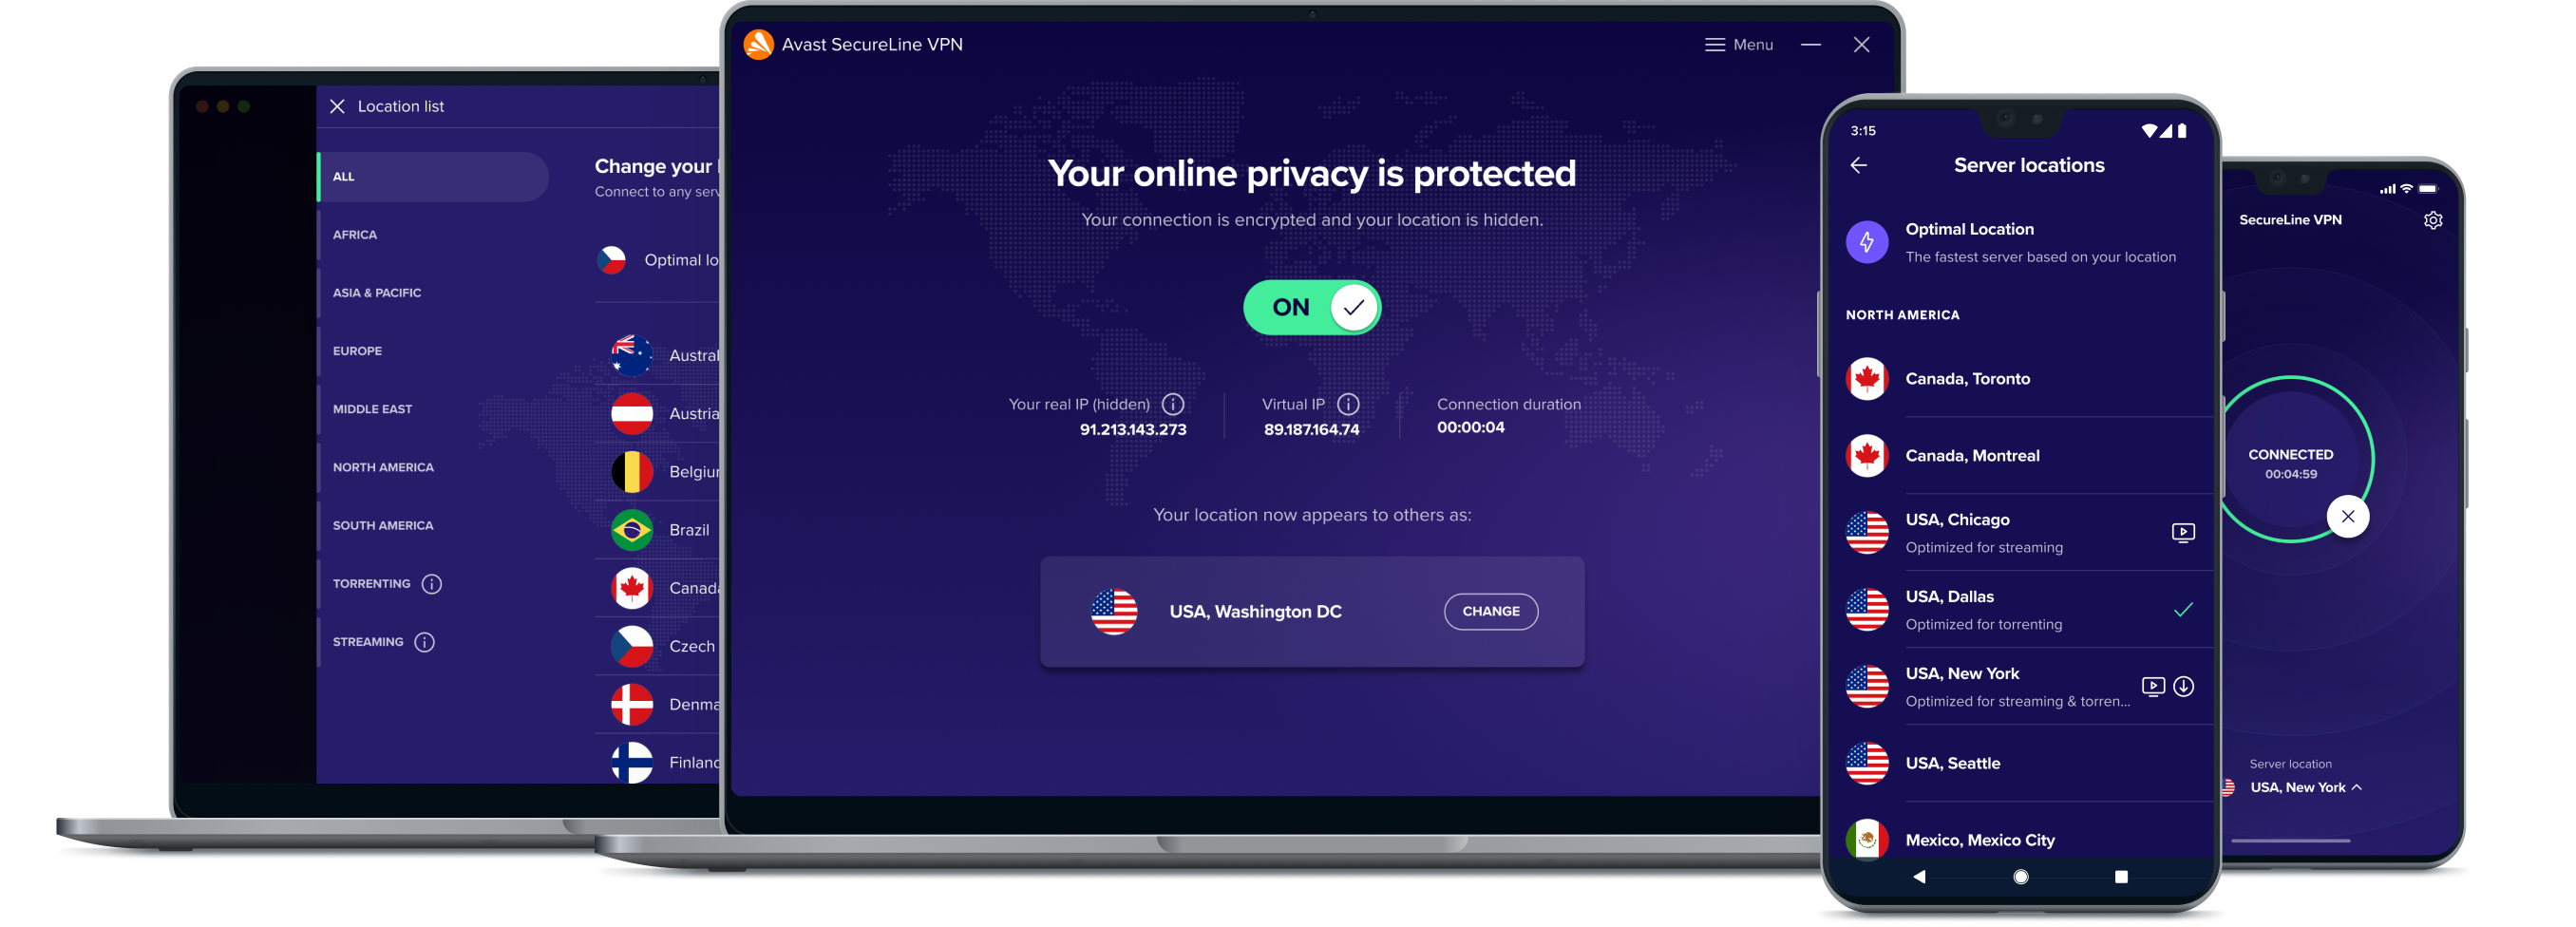 Få større onlinefrihed med vores VPN-tjeneste